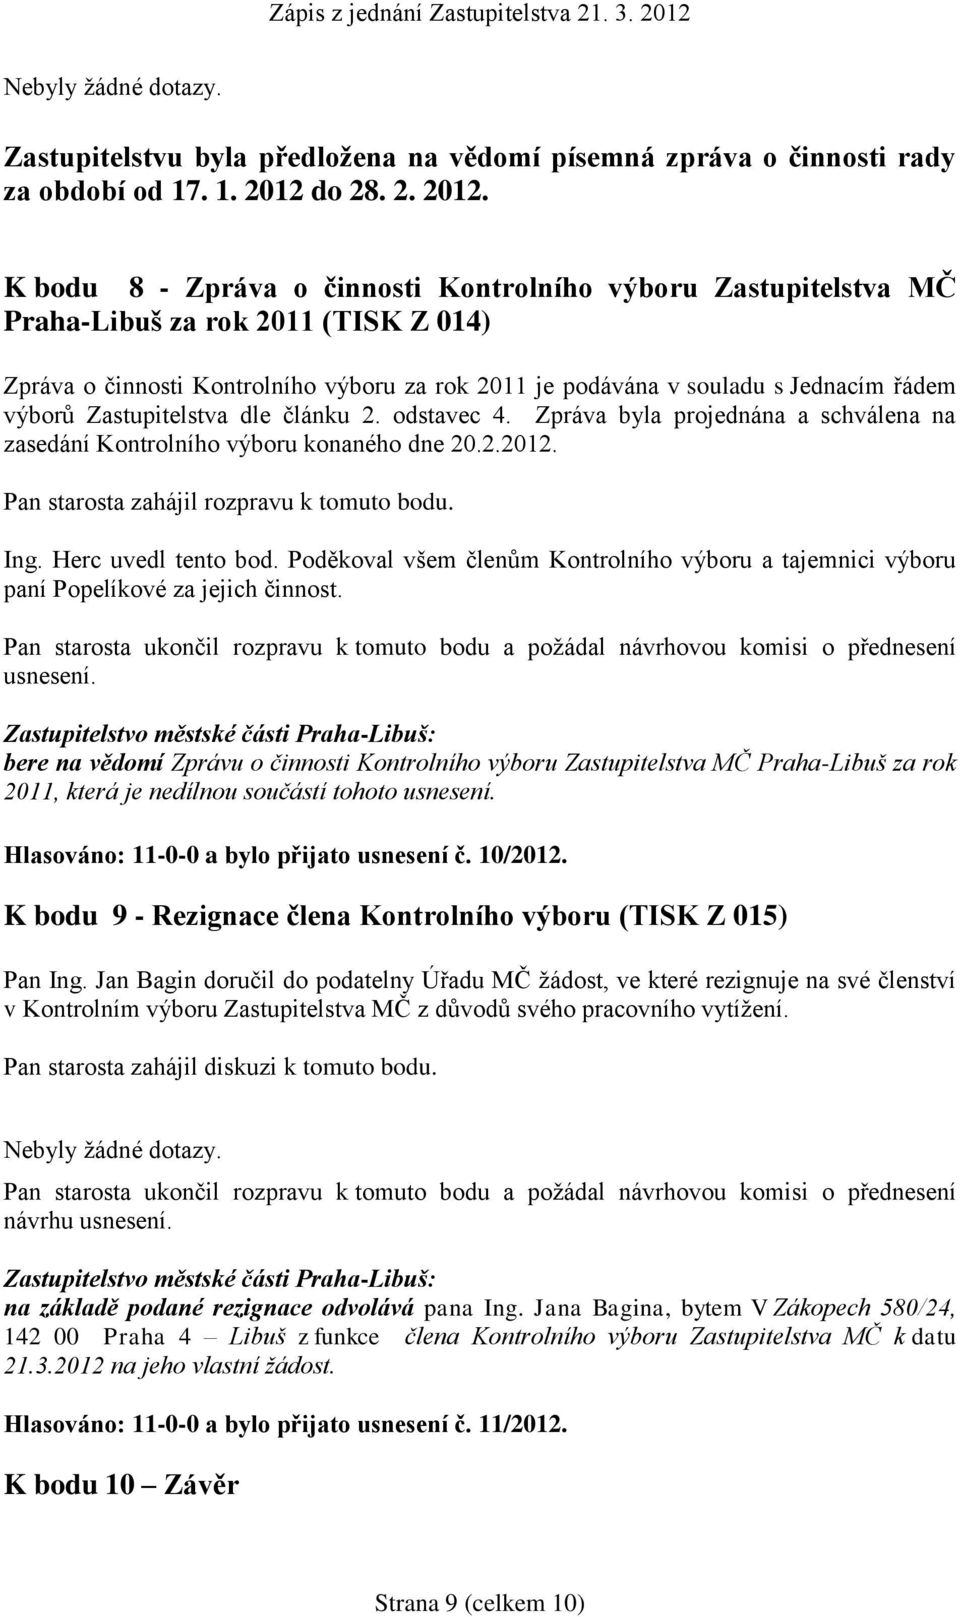 K bodu 8 - Zpráva o činnosti Kontrolního výboru Zastupitelstva MČ Praha-Libuš za rok 2011 (TISK Z 014) Zpráva o činnosti Kontrolního výboru za rok 2011 je podávána v souladu s Jednacím řádem výborů